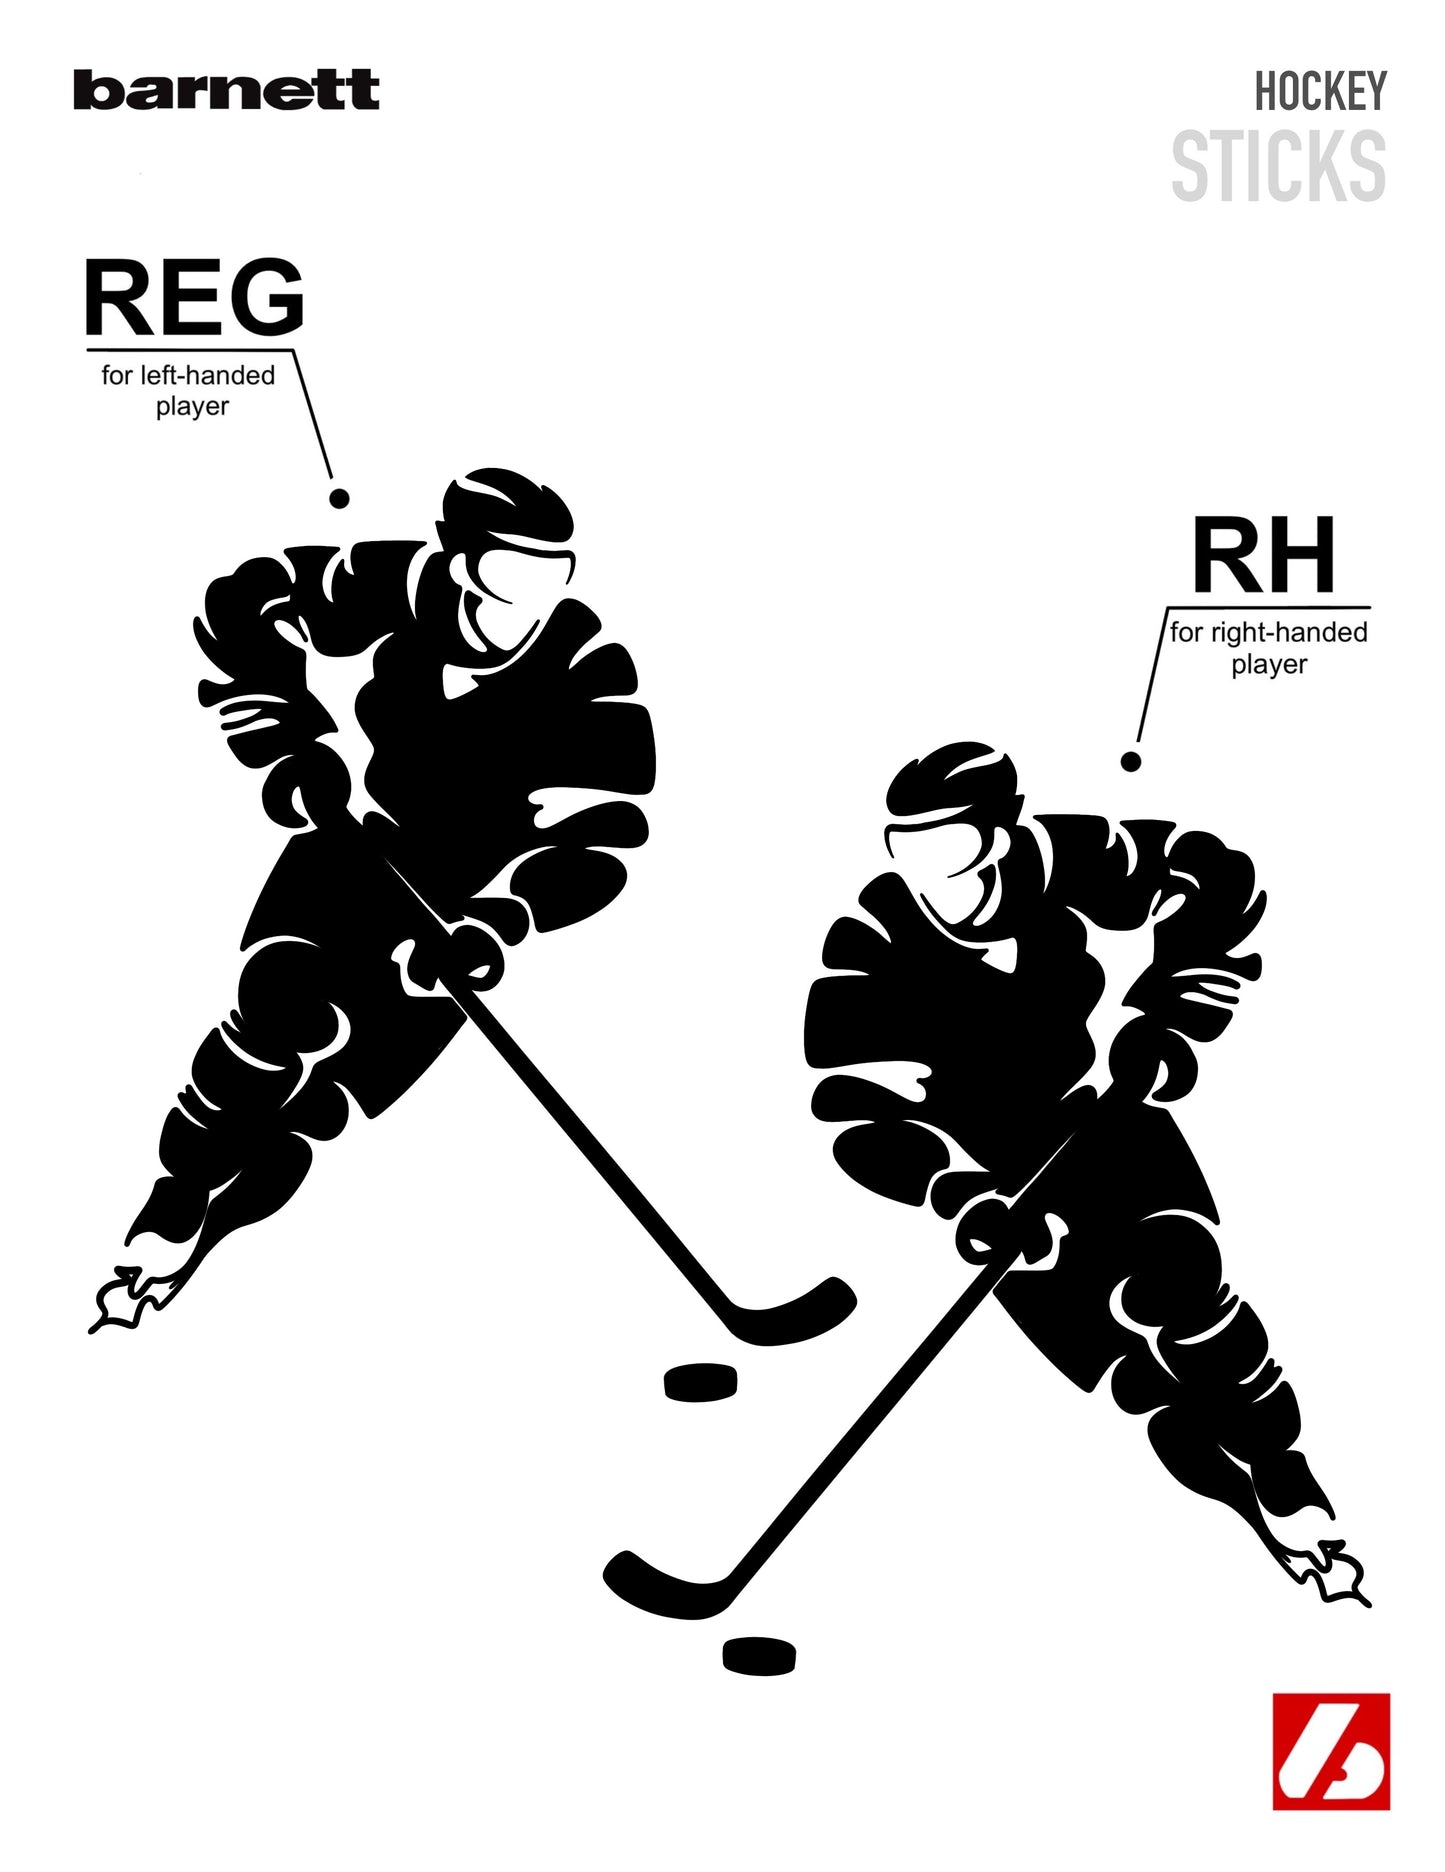 HS-09 Mazza da hockey in carbonio ad alto modulo